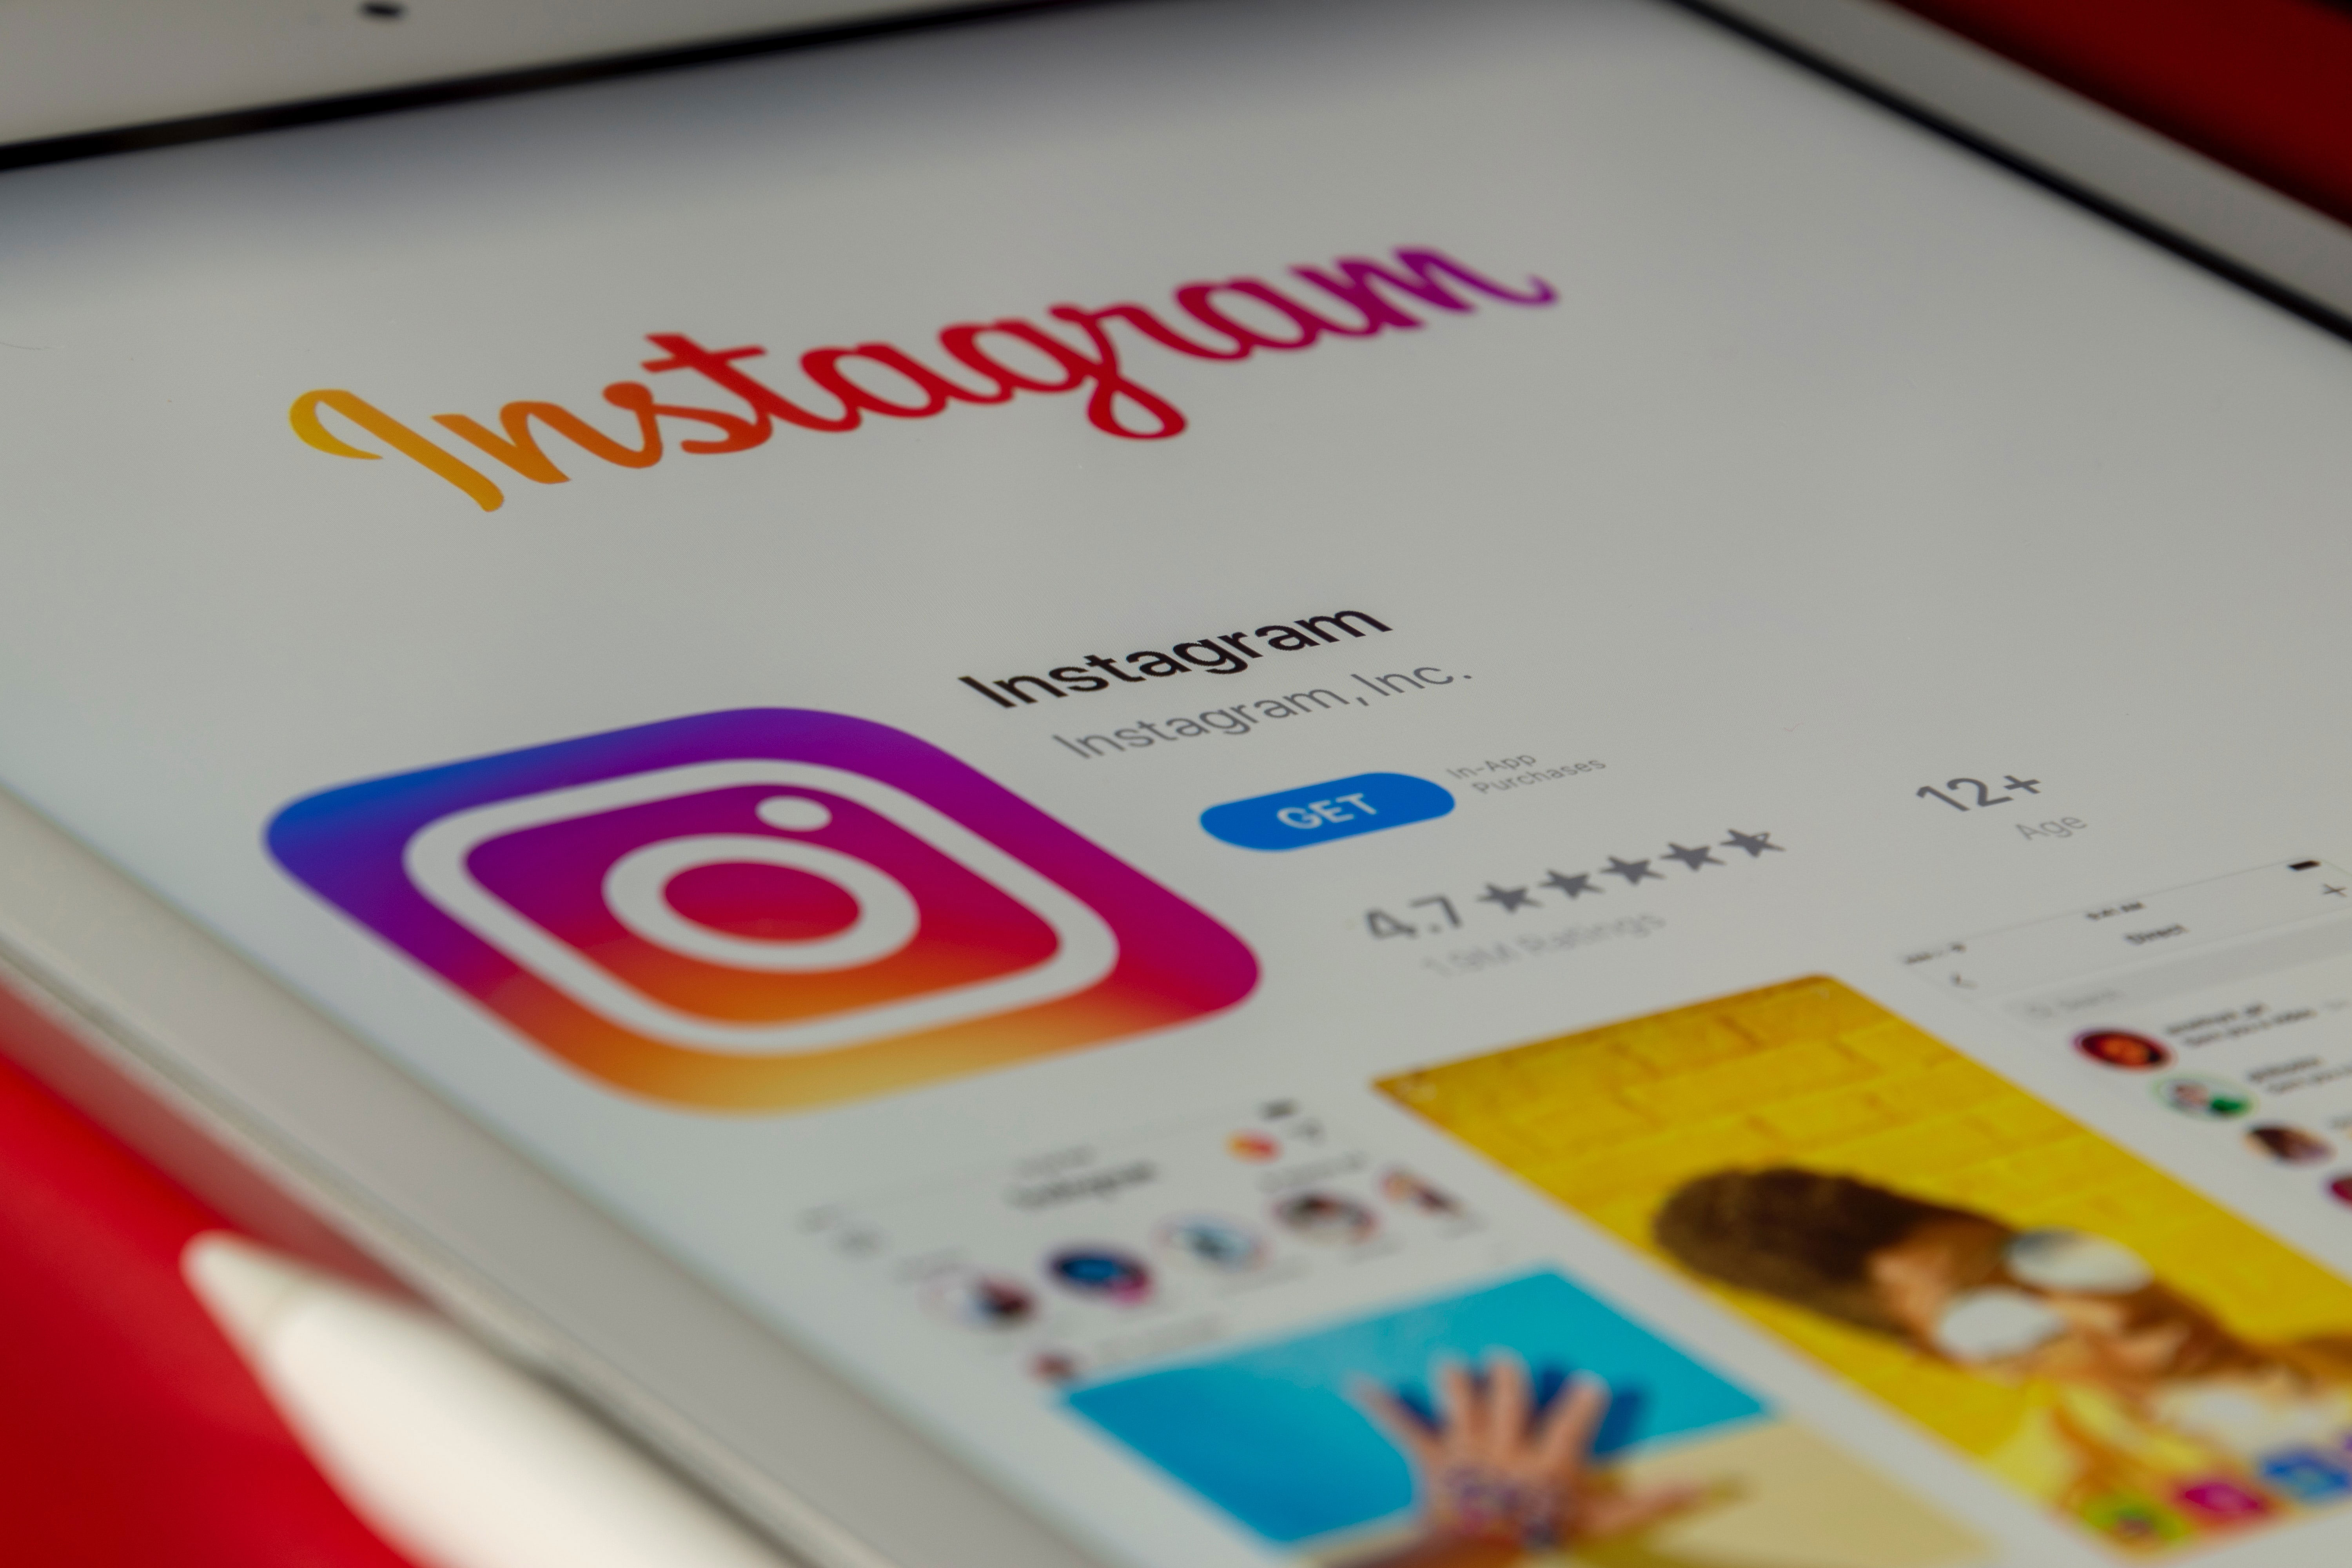 vender más en internet: Novedades Instagram